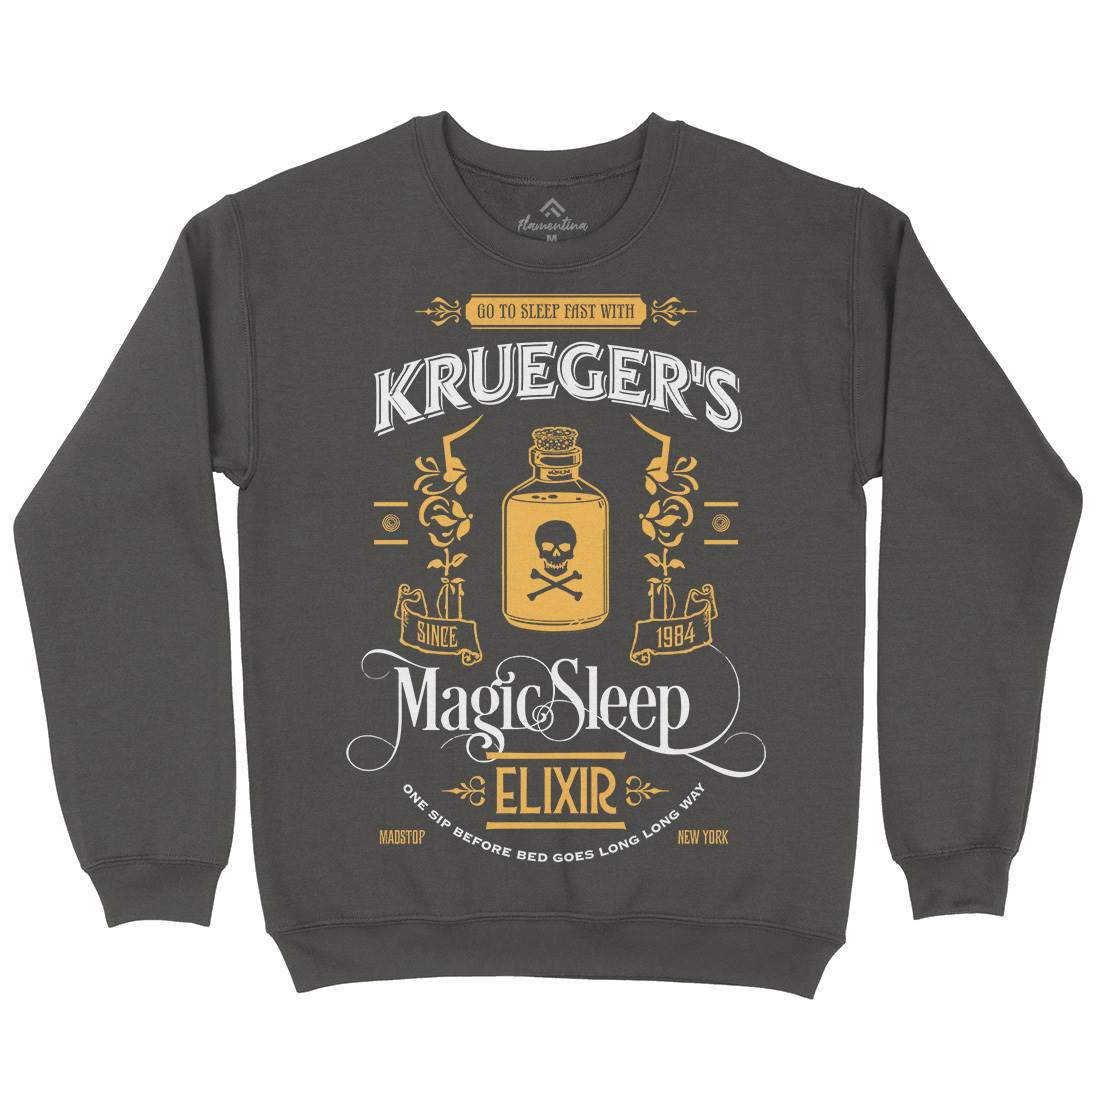 Kruegers Elixir Kids Crew Neck Sweatshirt Horror D214